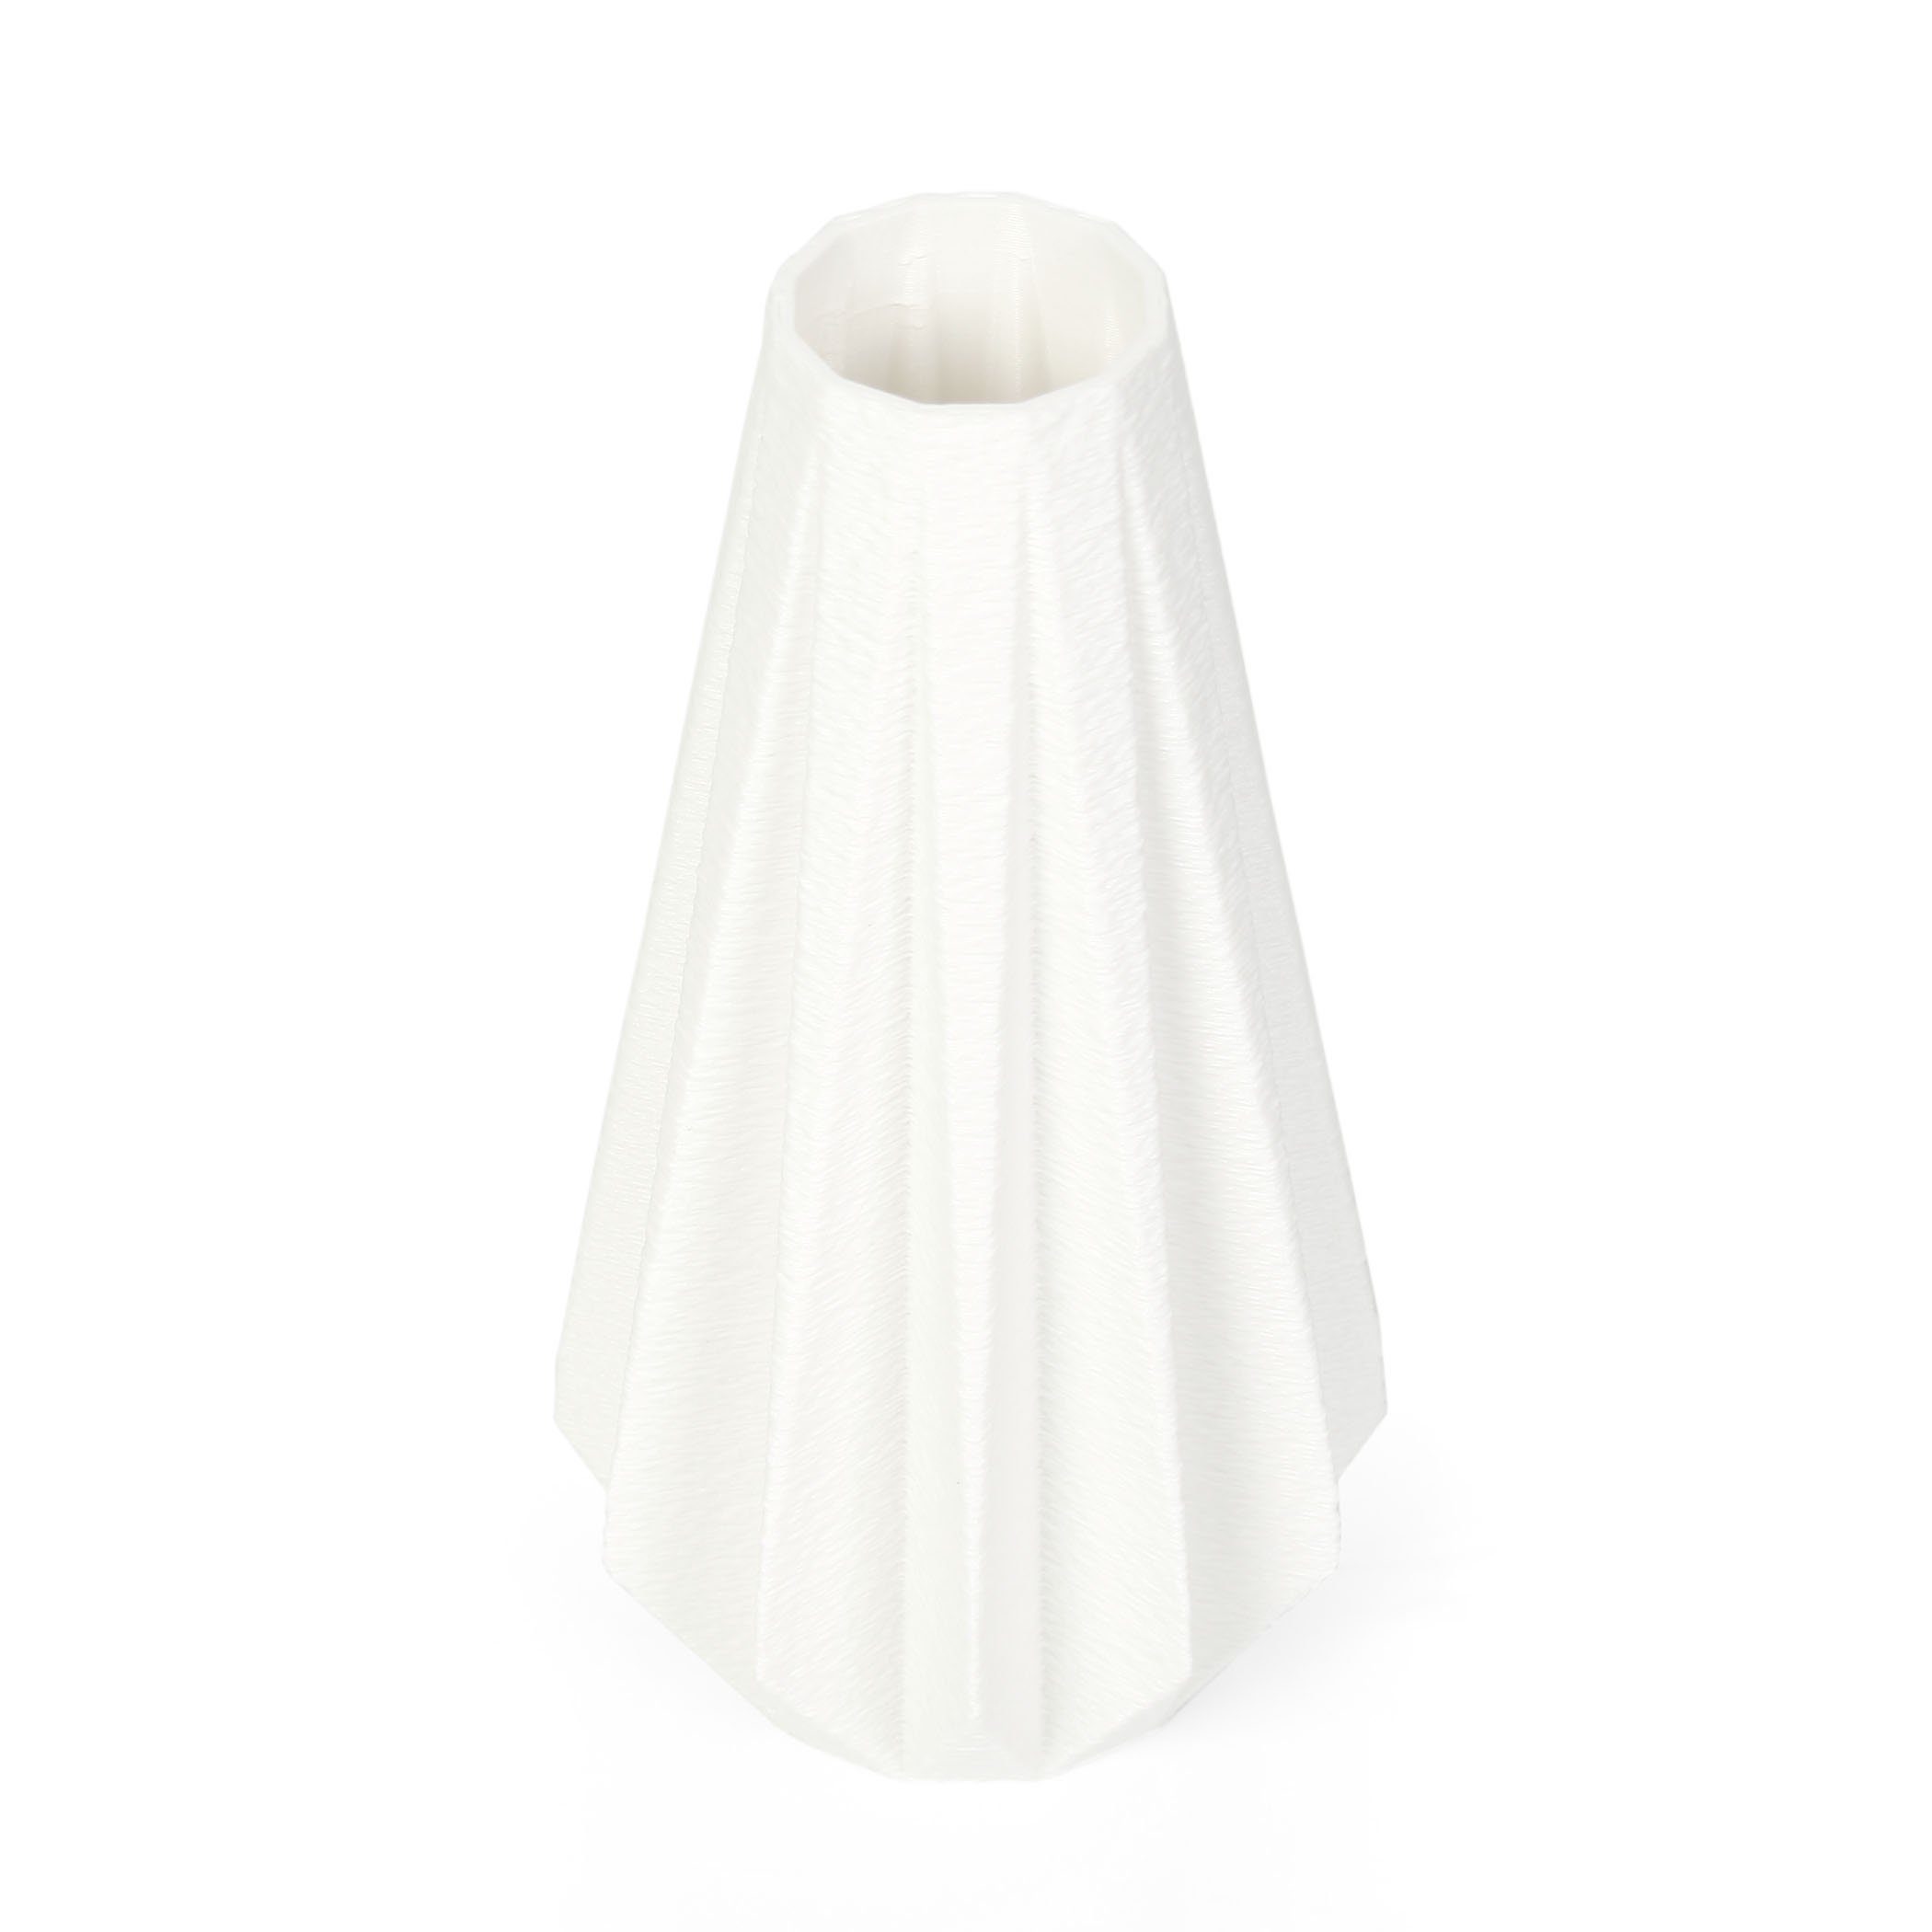 Bio-Kunststoff, nachwachsenden White Feder Blumenvase aus & Vase – Dekorative Designer bruchsicher Dekovase wasserdicht aus Kreative Rohstoffen;